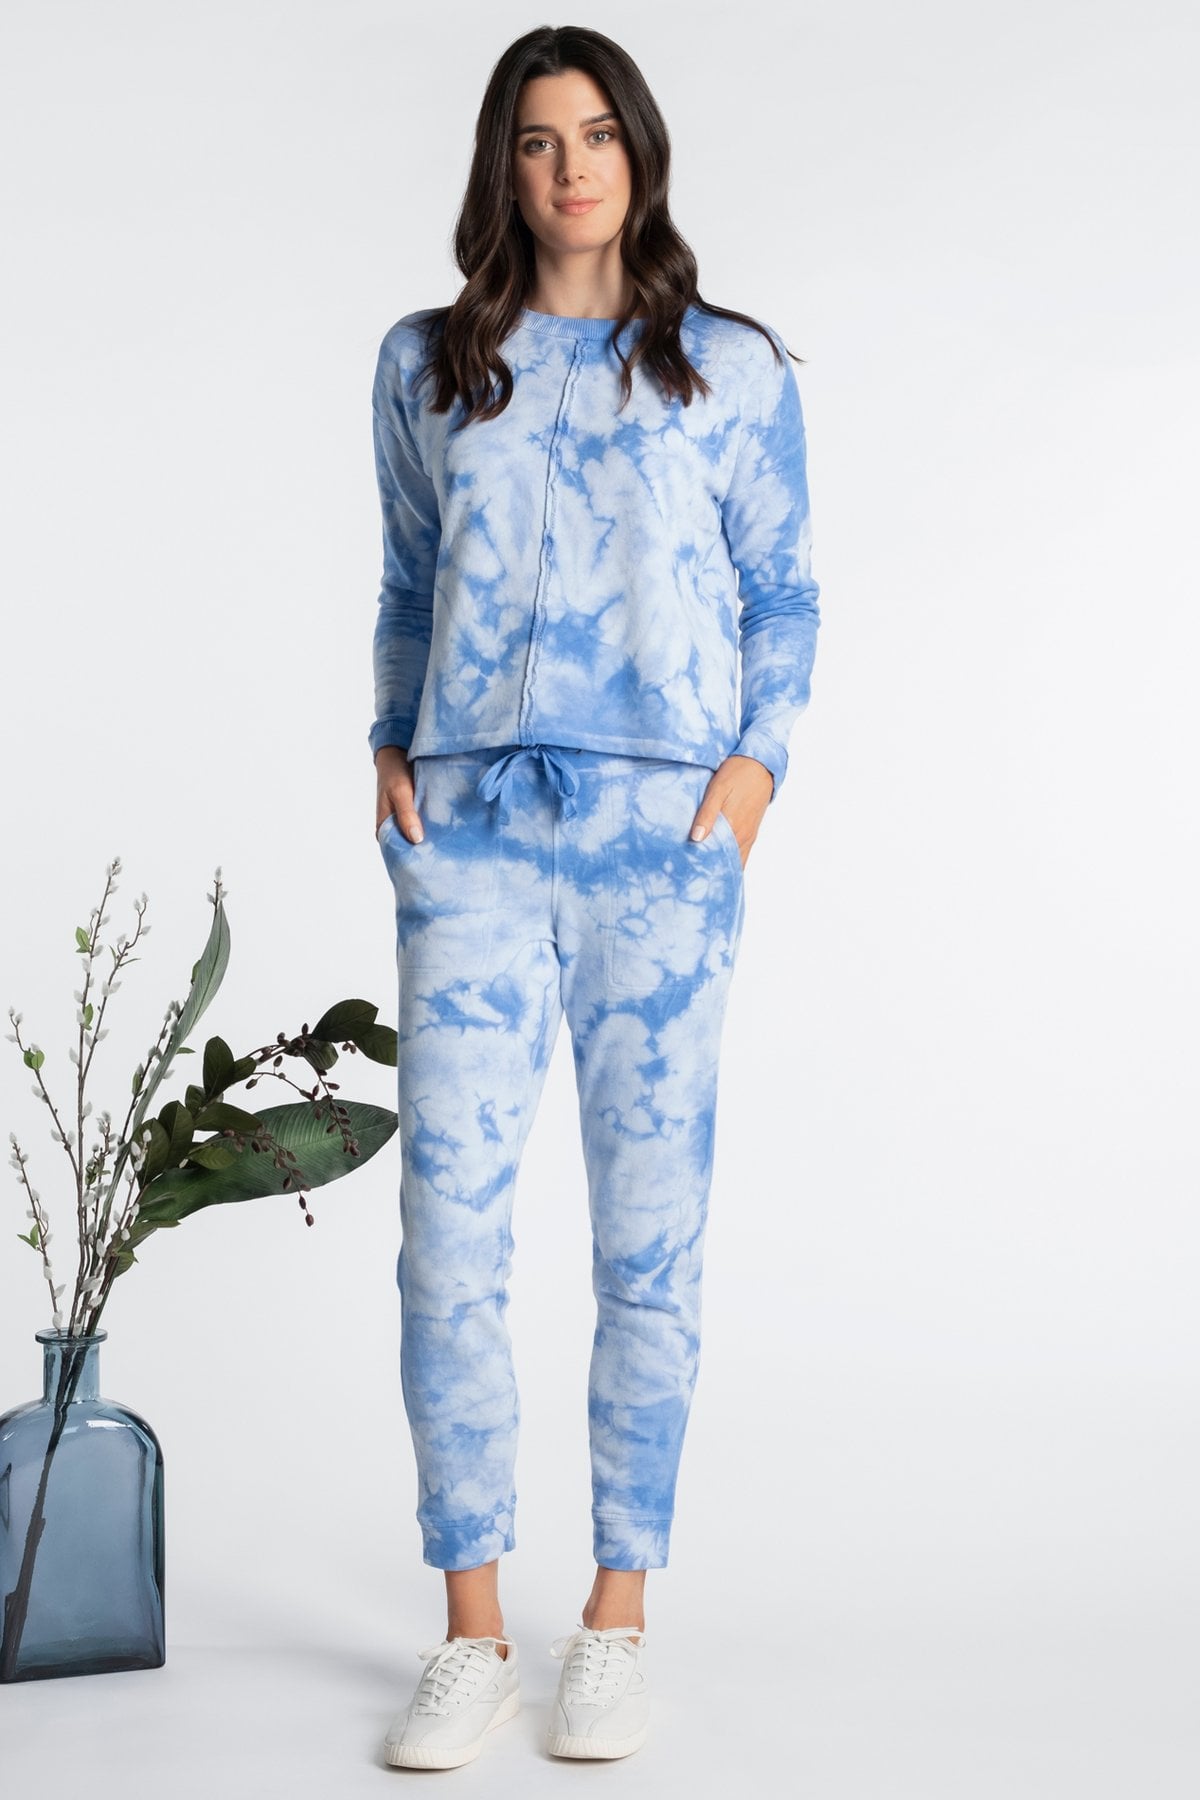 Stormi Webster Wore a Stylish Blue Tie-Dye Loungewear Set